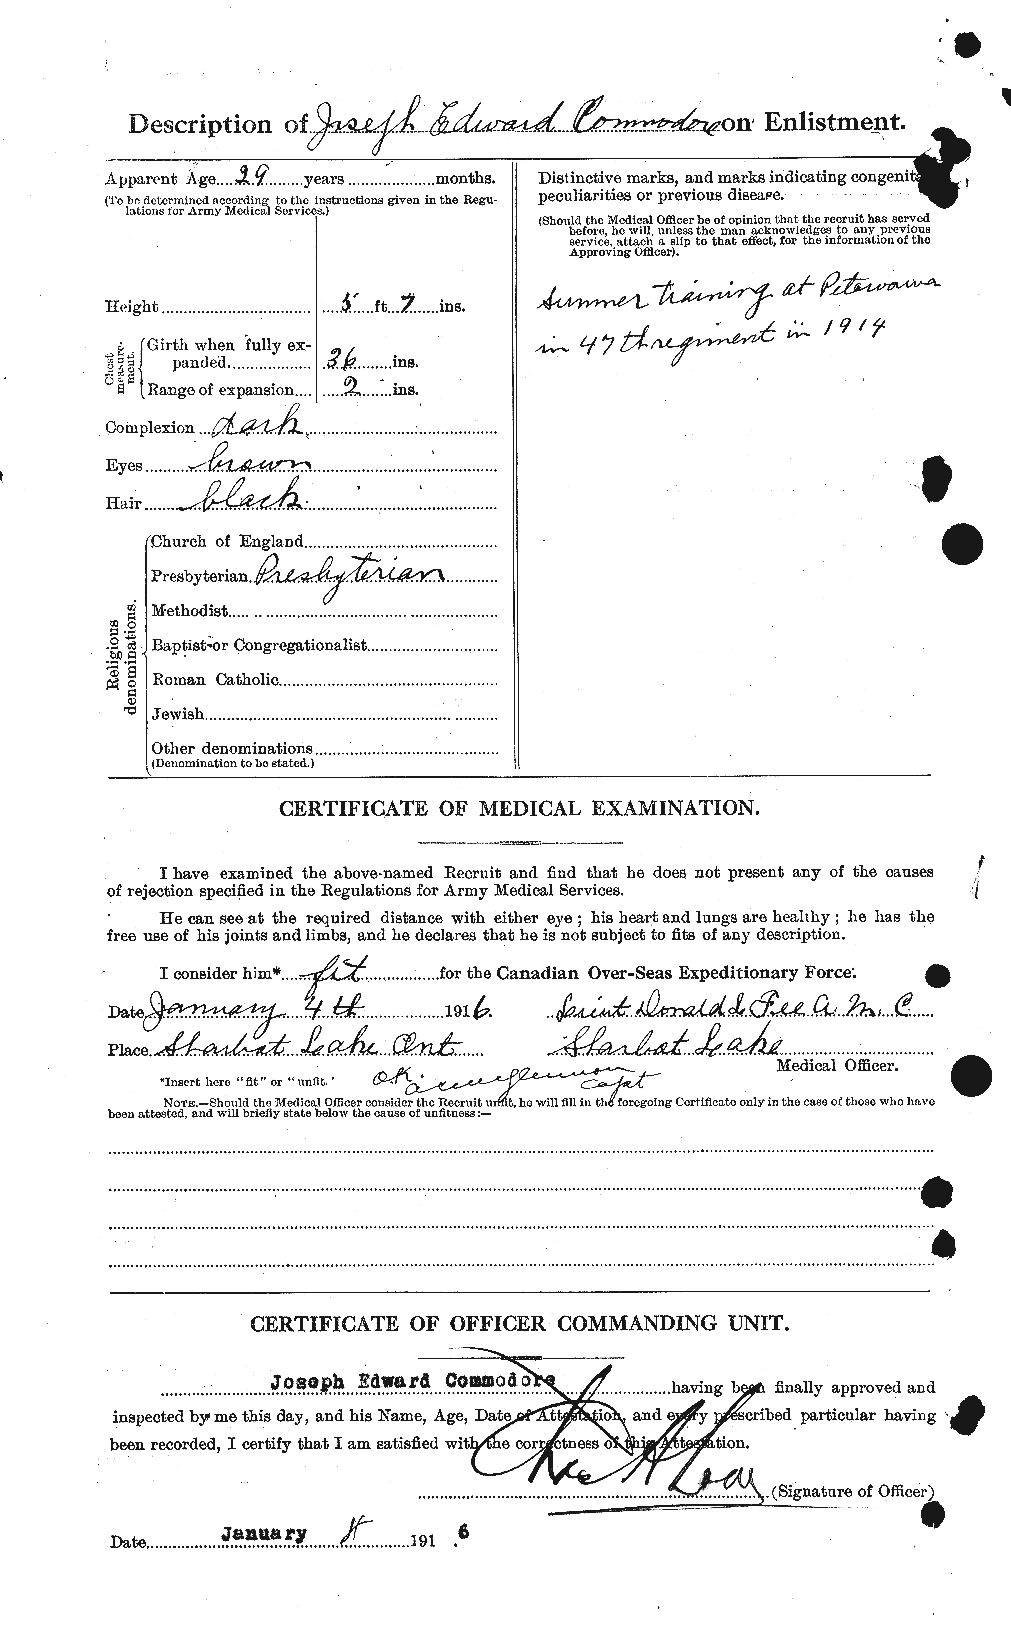 Dossiers du Personnel de la Première Guerre mondiale - CEC 068730b